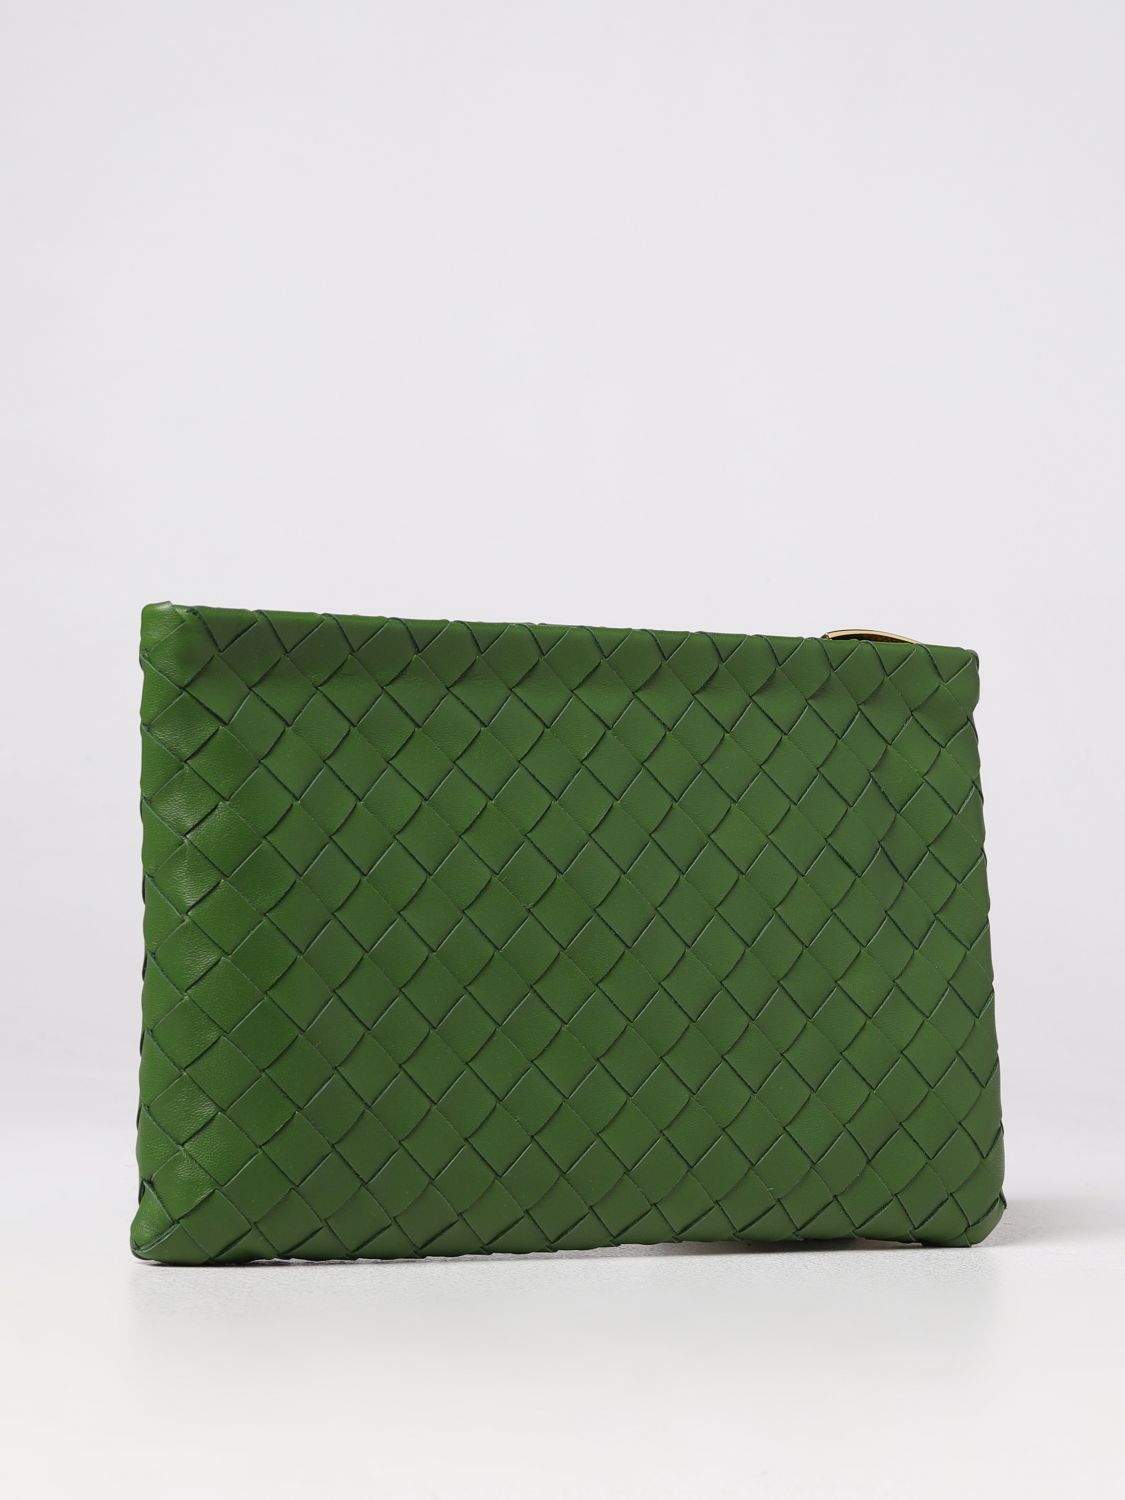 BOTTEGA VENETA: intrecciato nappa leather pouch - Pea Green